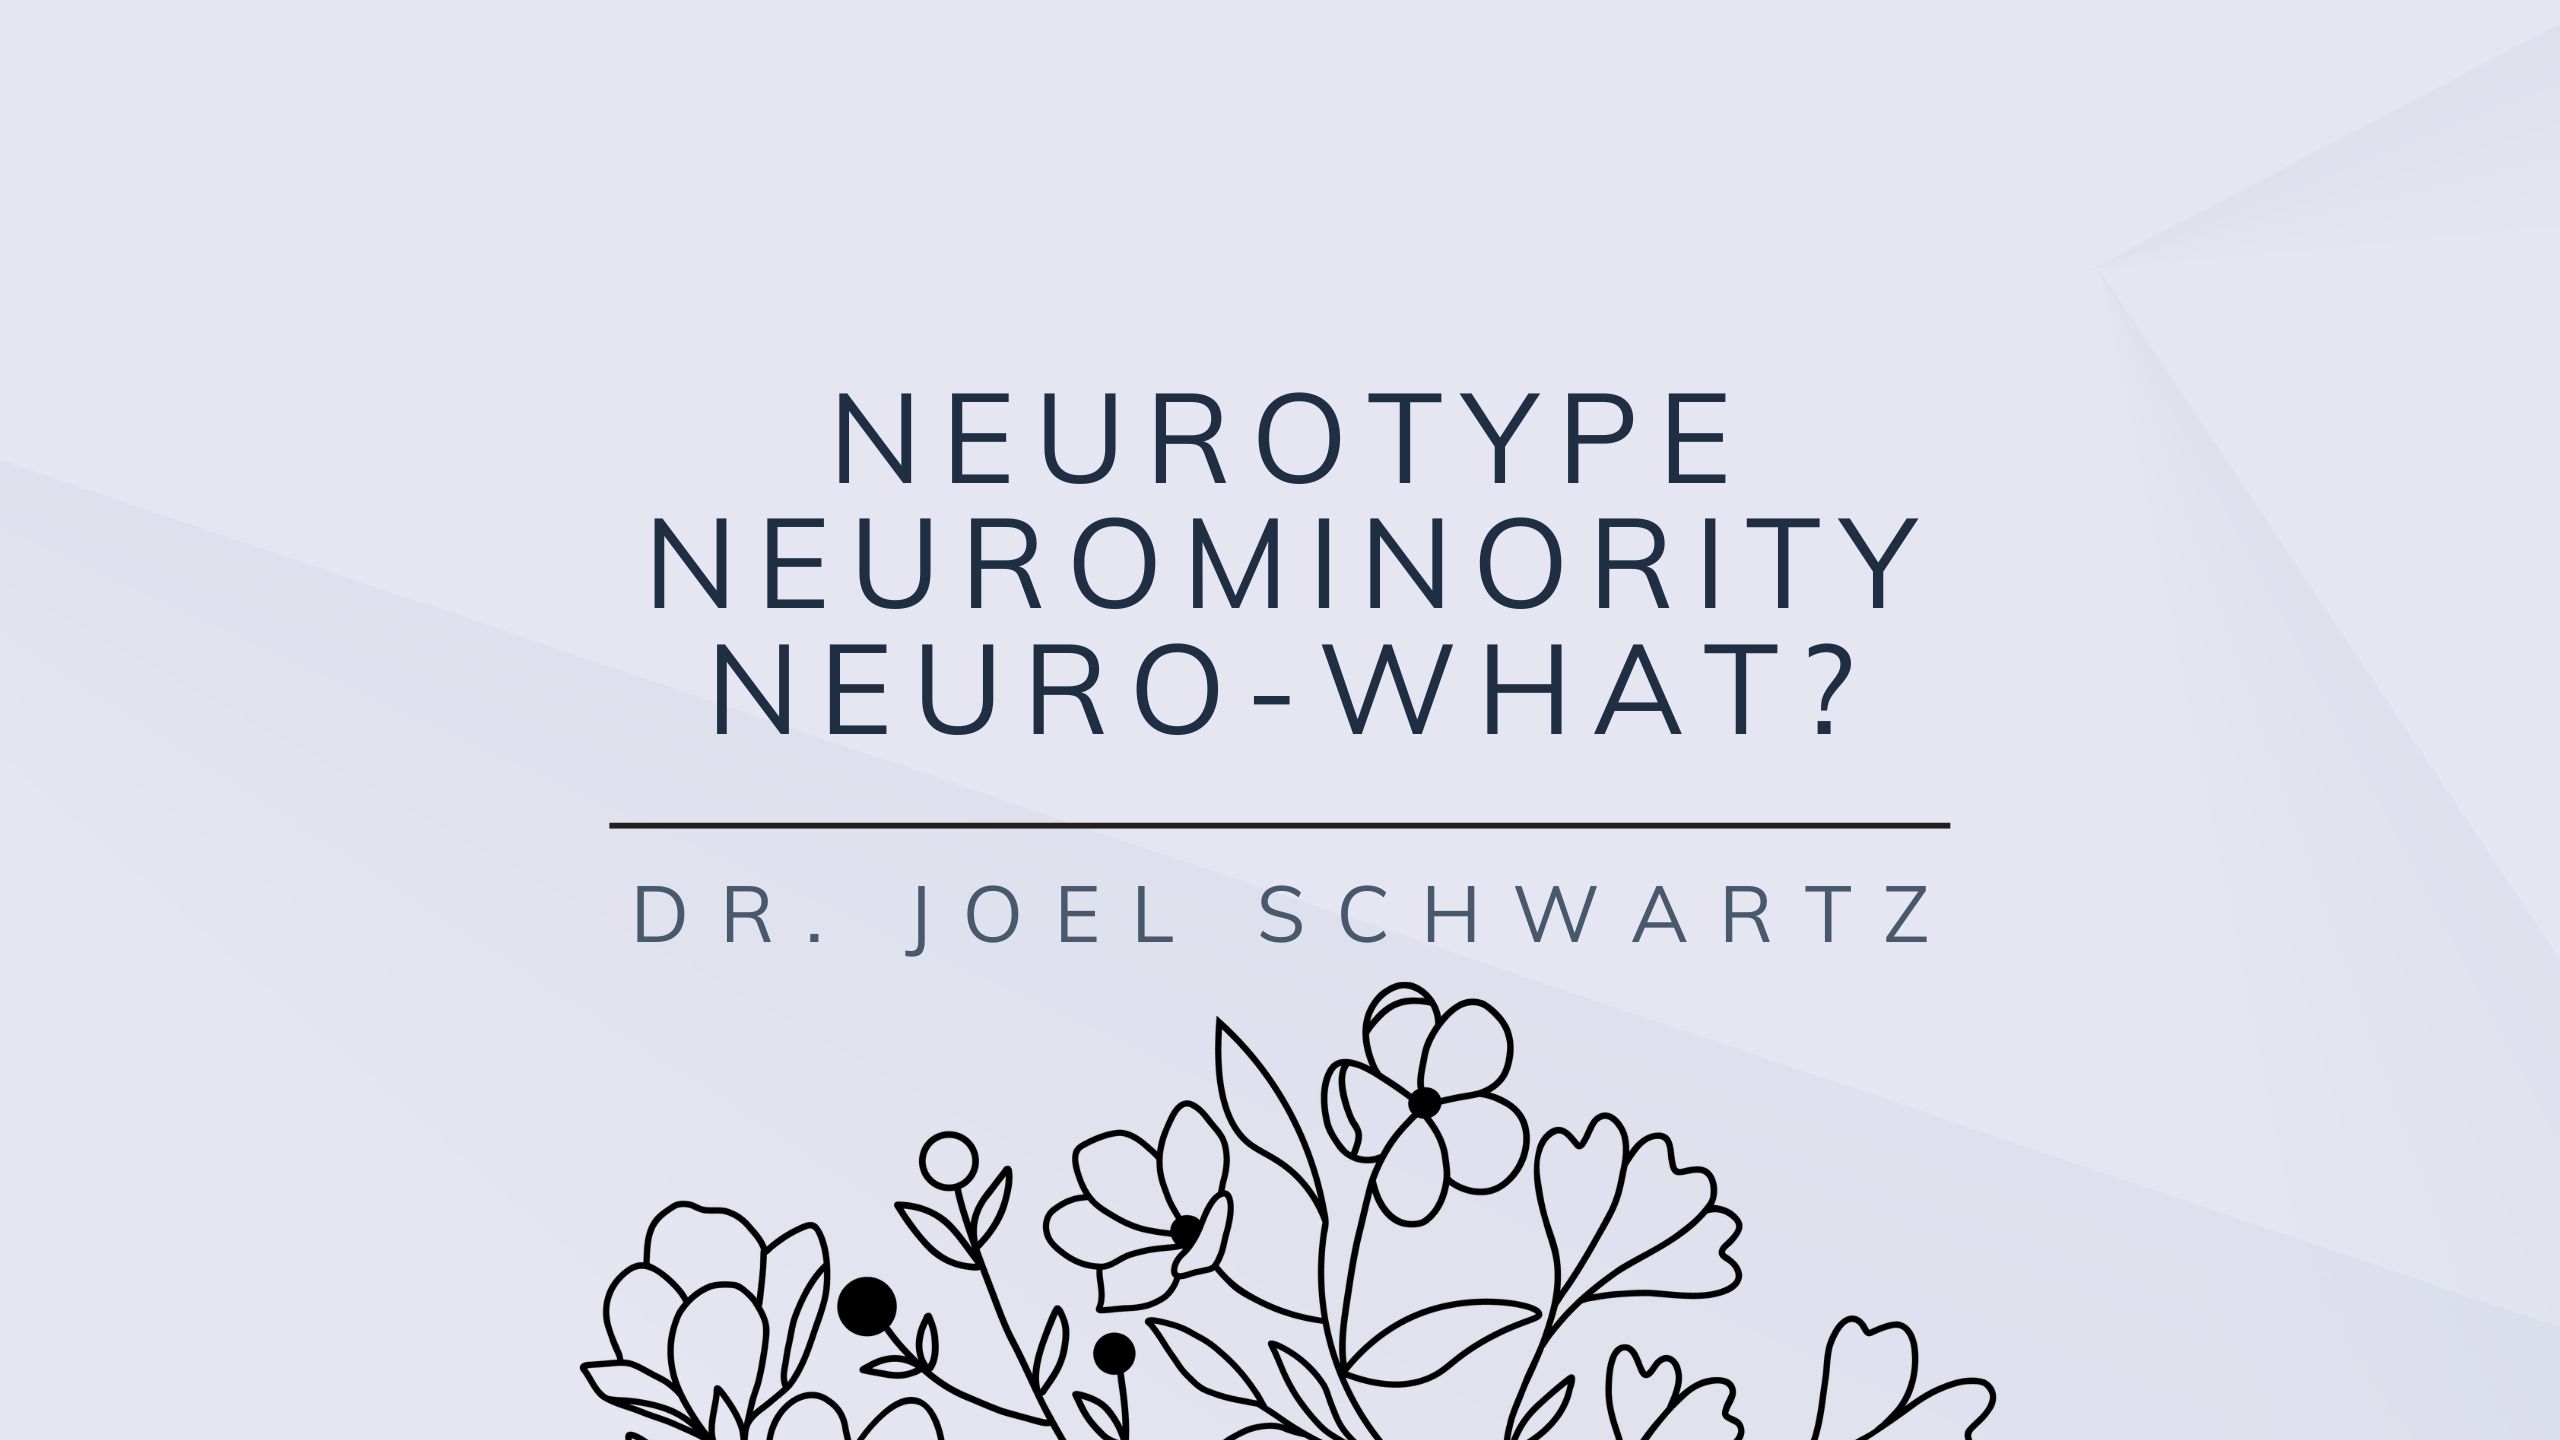 Neurotype, Neurominority, Neuro-what